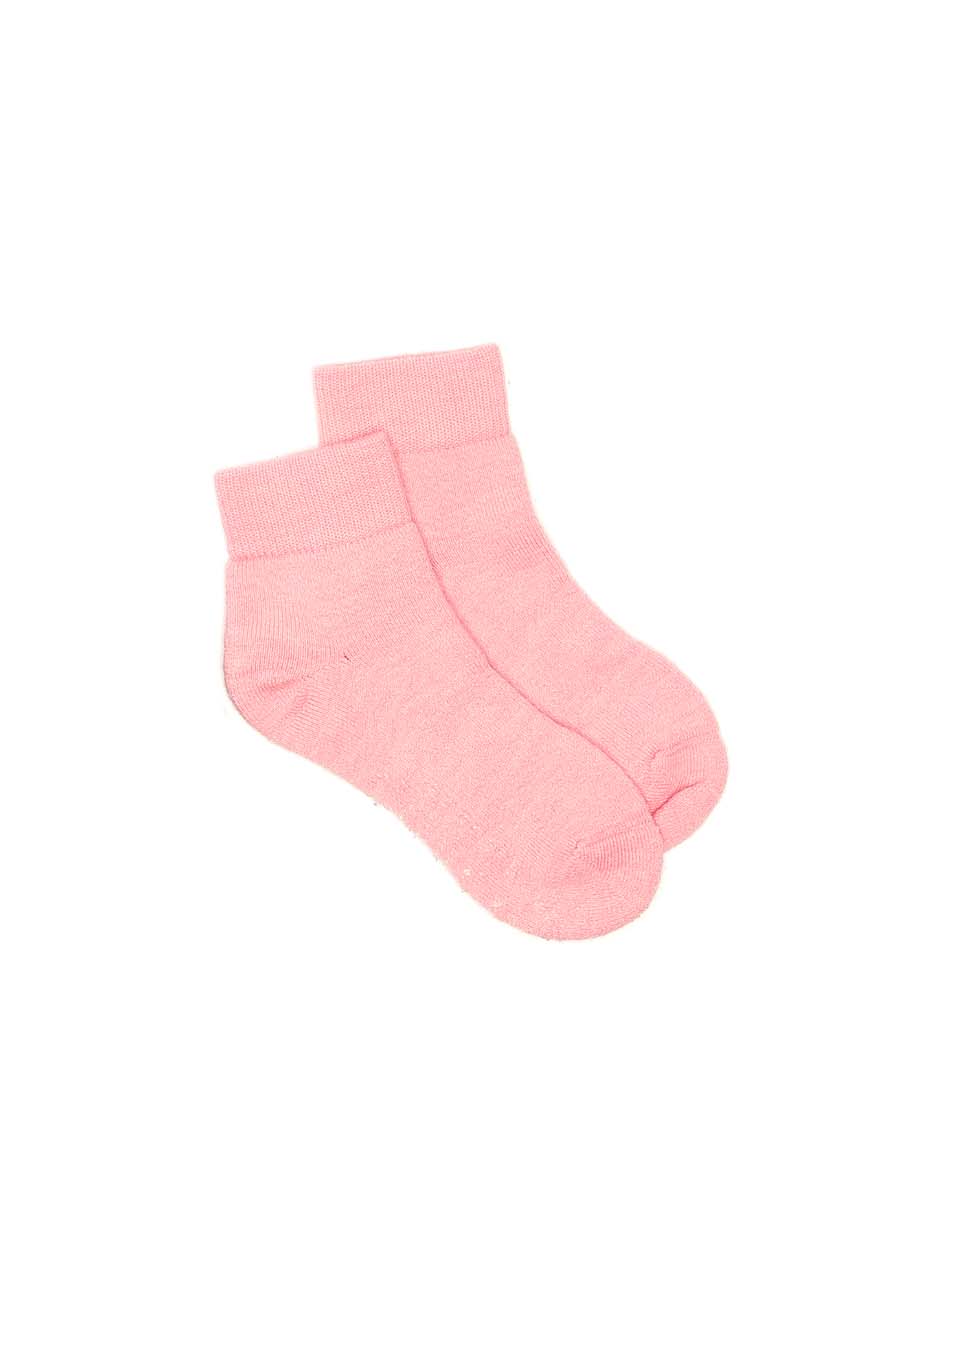 Slipper Socks - Pink